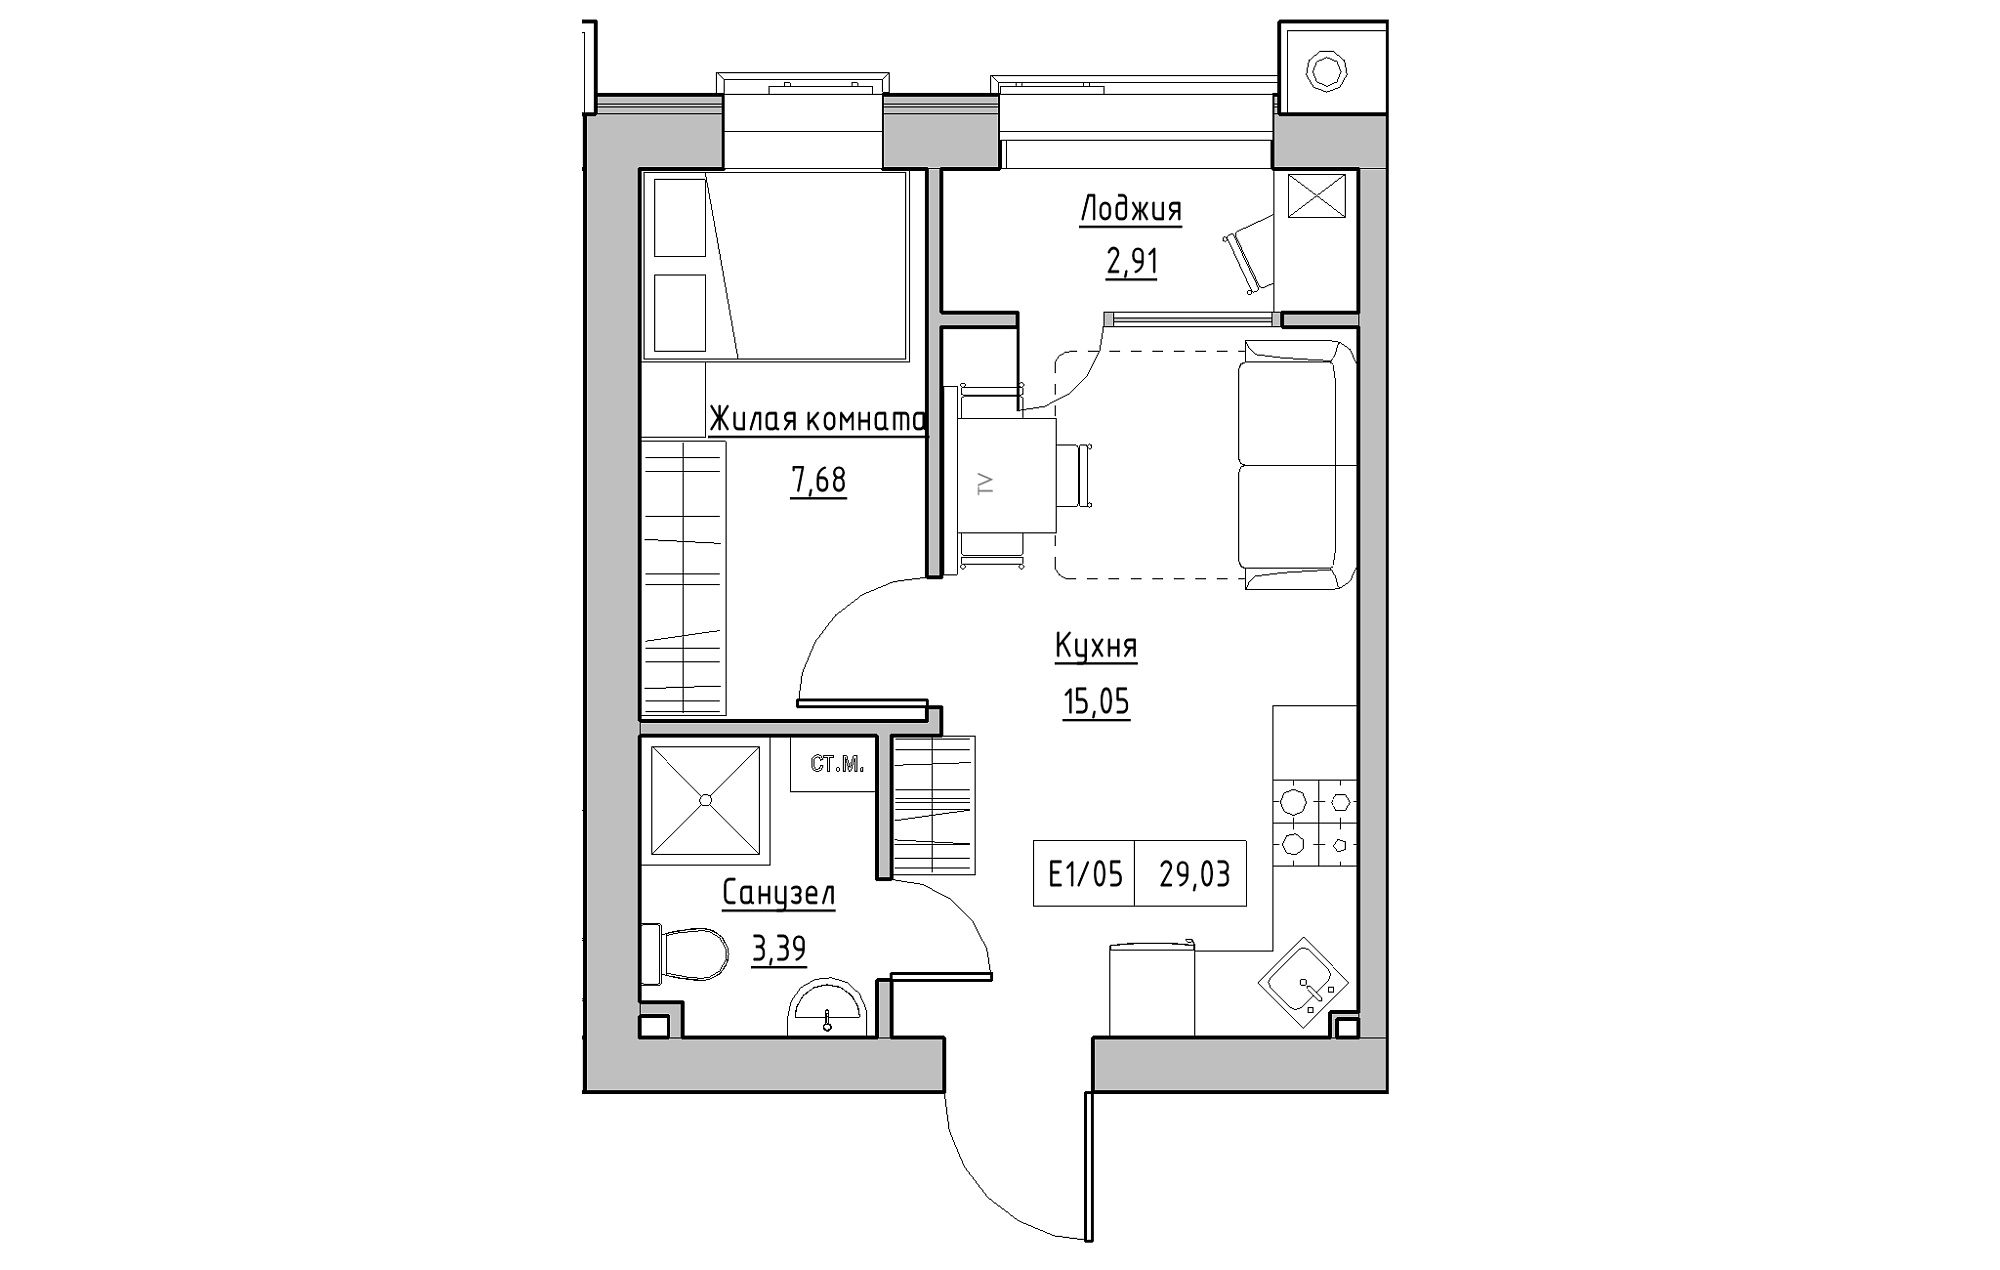 Планировка 1-к квартира площей 29.03м2, KS-013-03/0007.